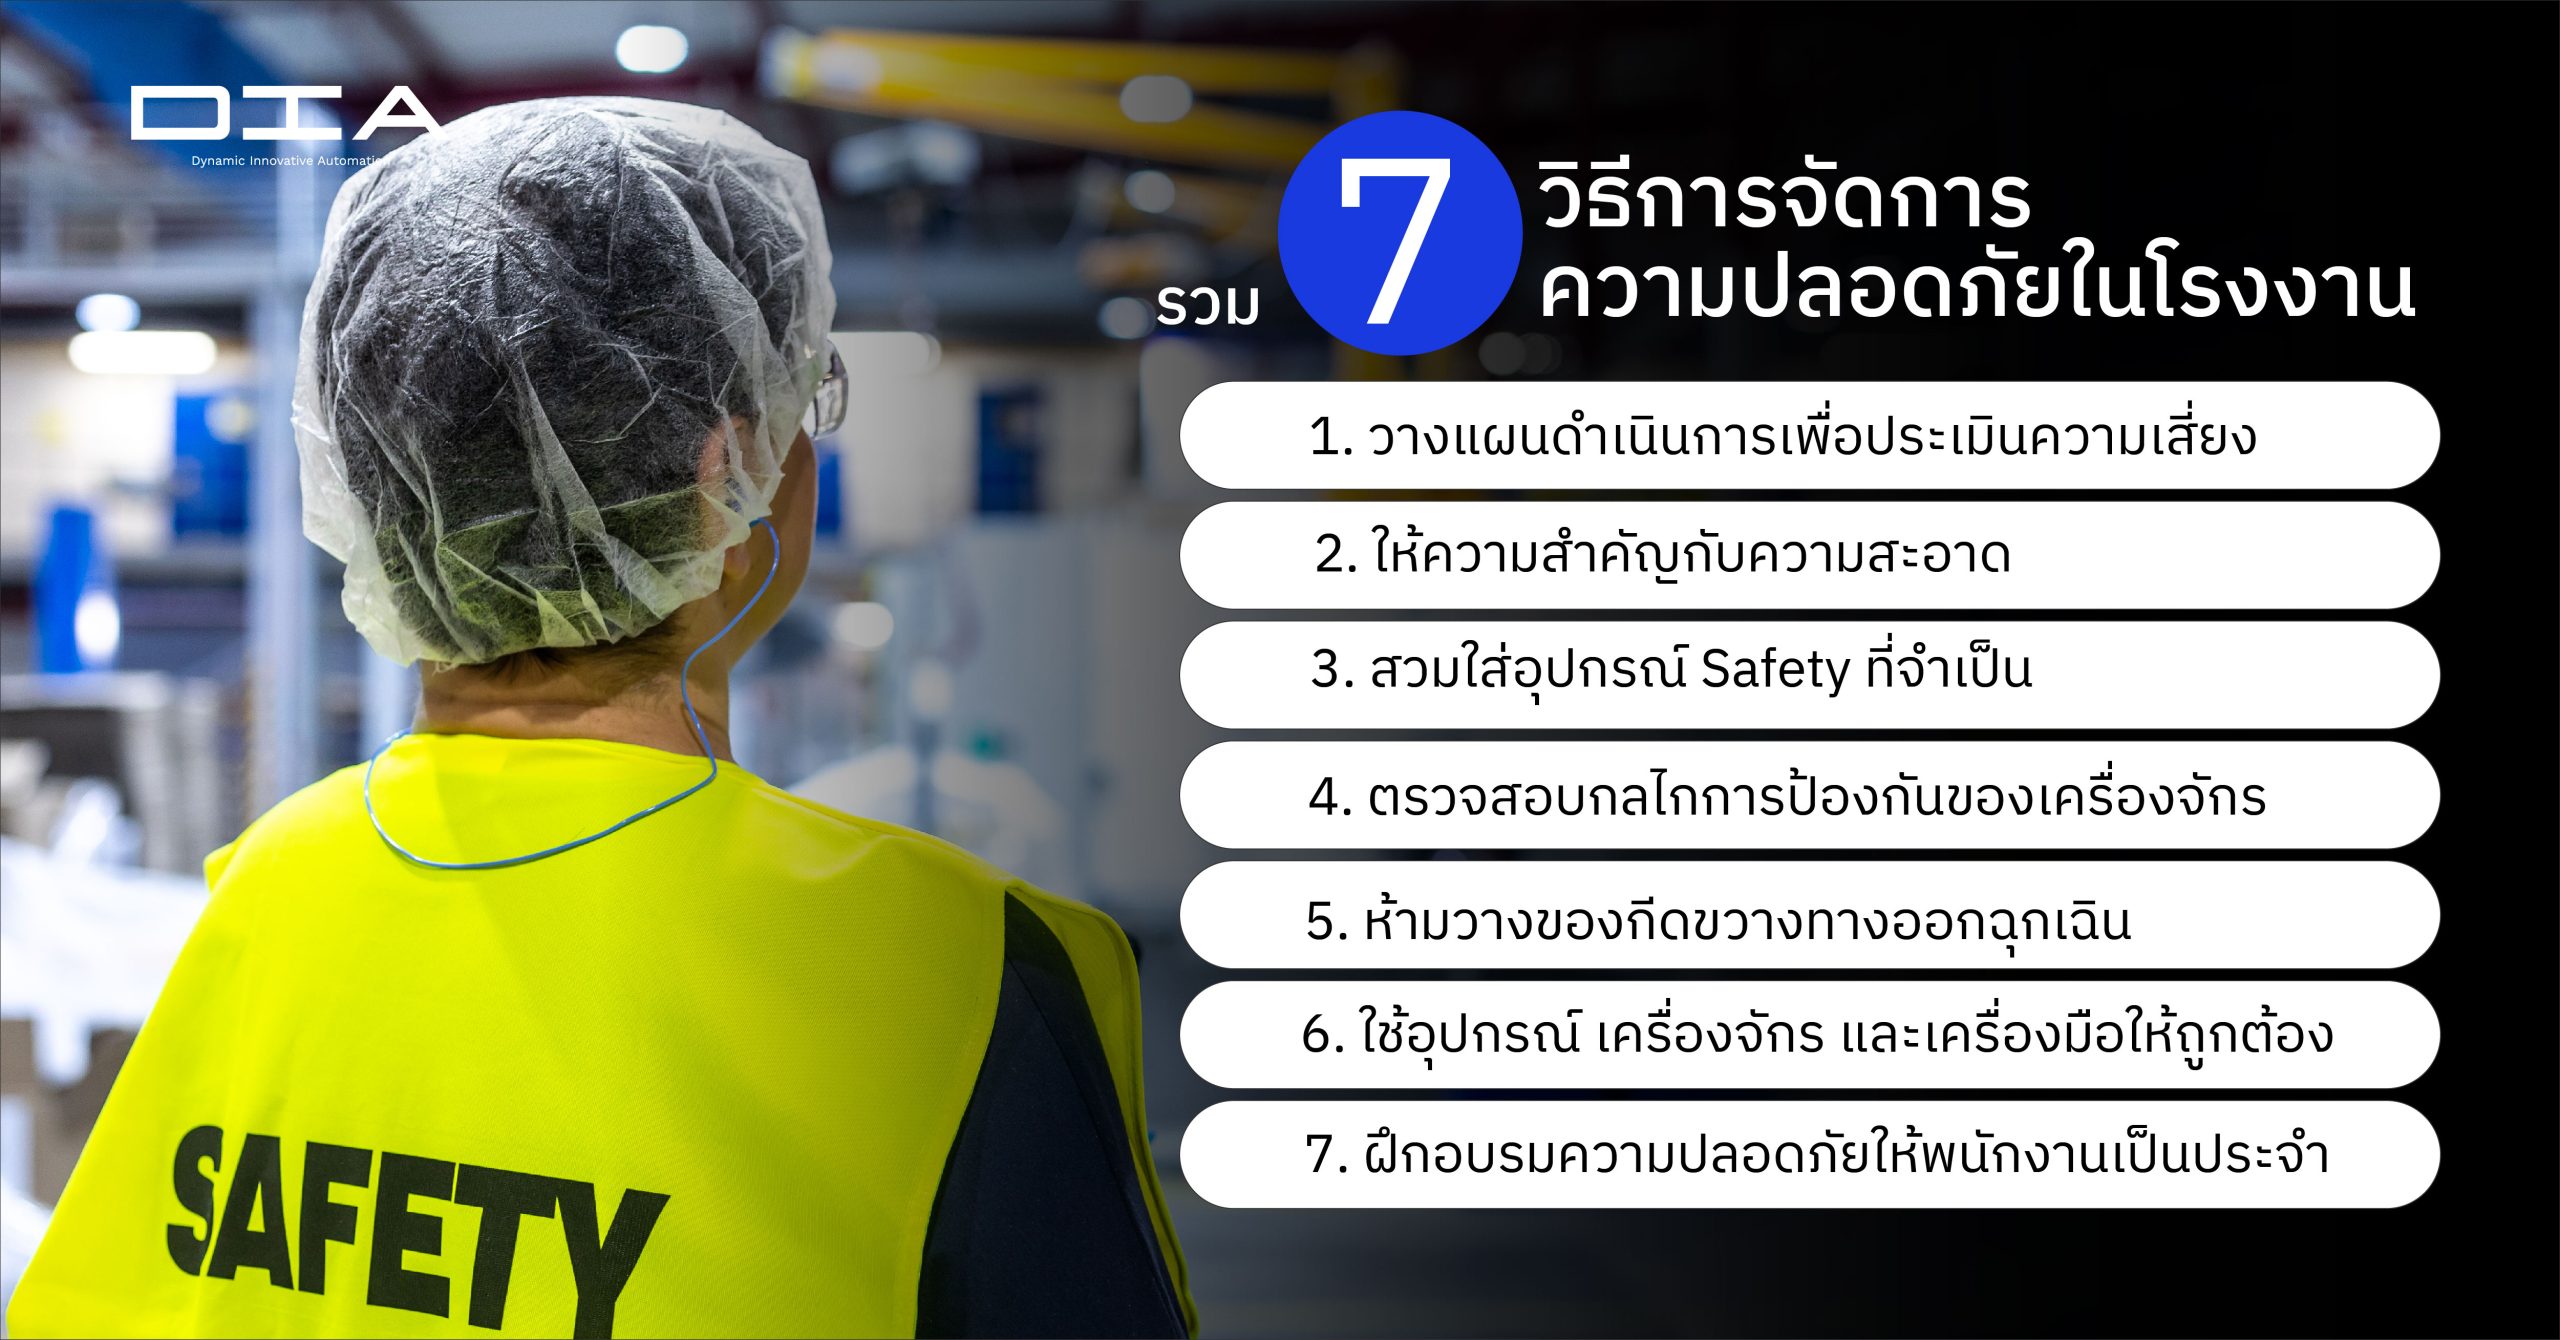 รวม 7 วิธีการจัดการความปลอดภัยในโรงงาน